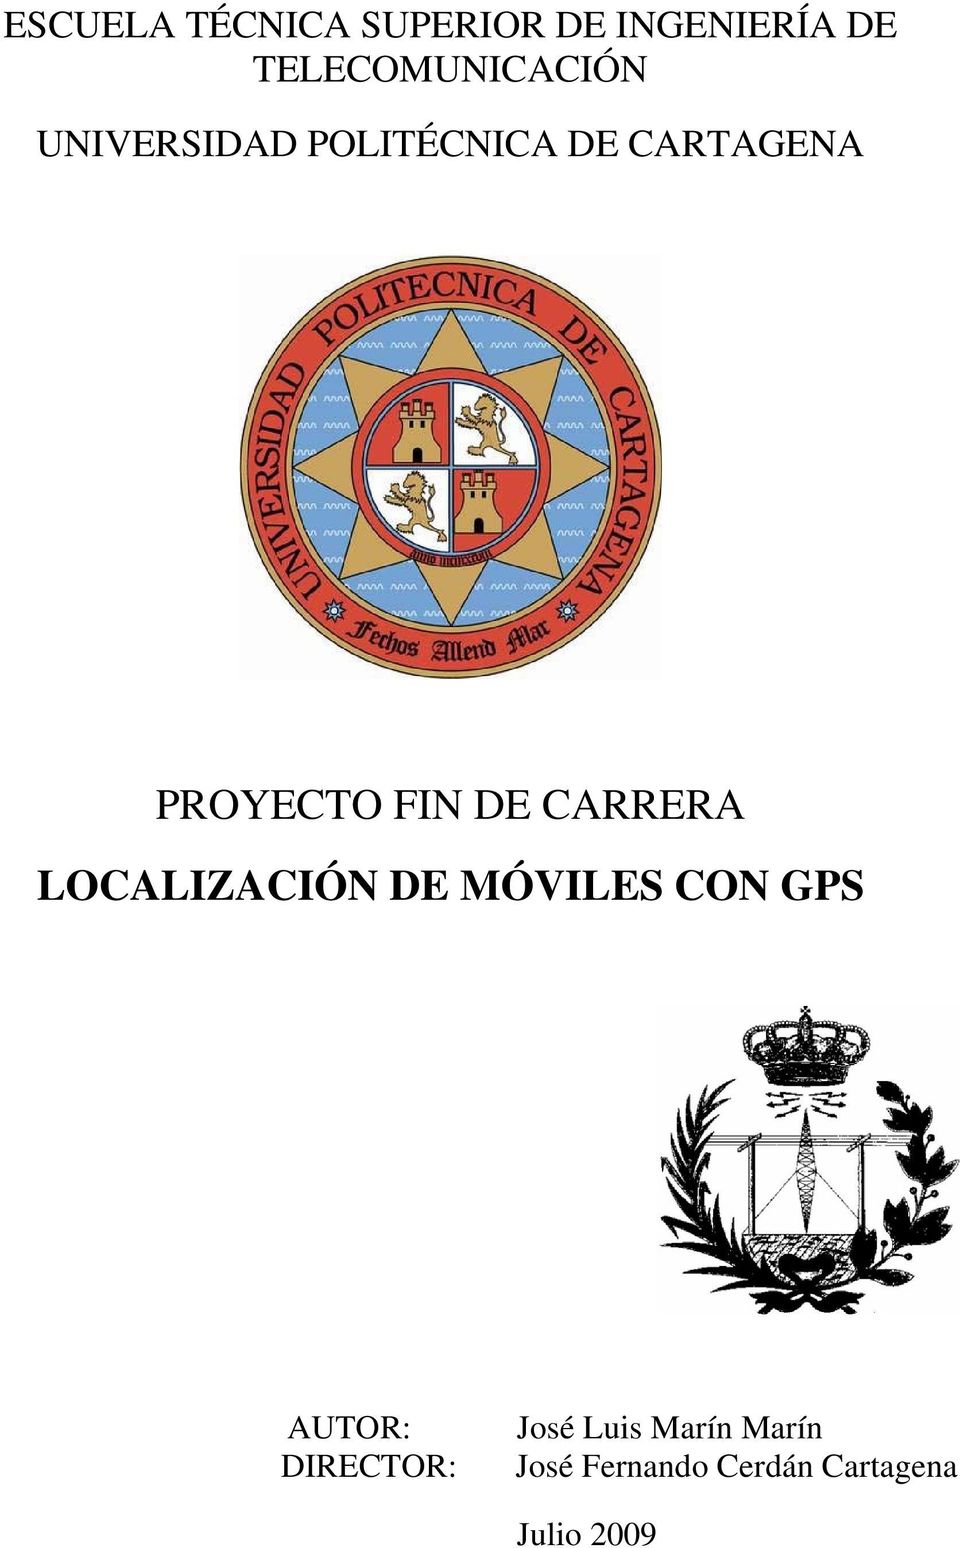 PROYECTO FIN DE CARRERA LOCALIZACIÓN DE MÓVILES CON GPS